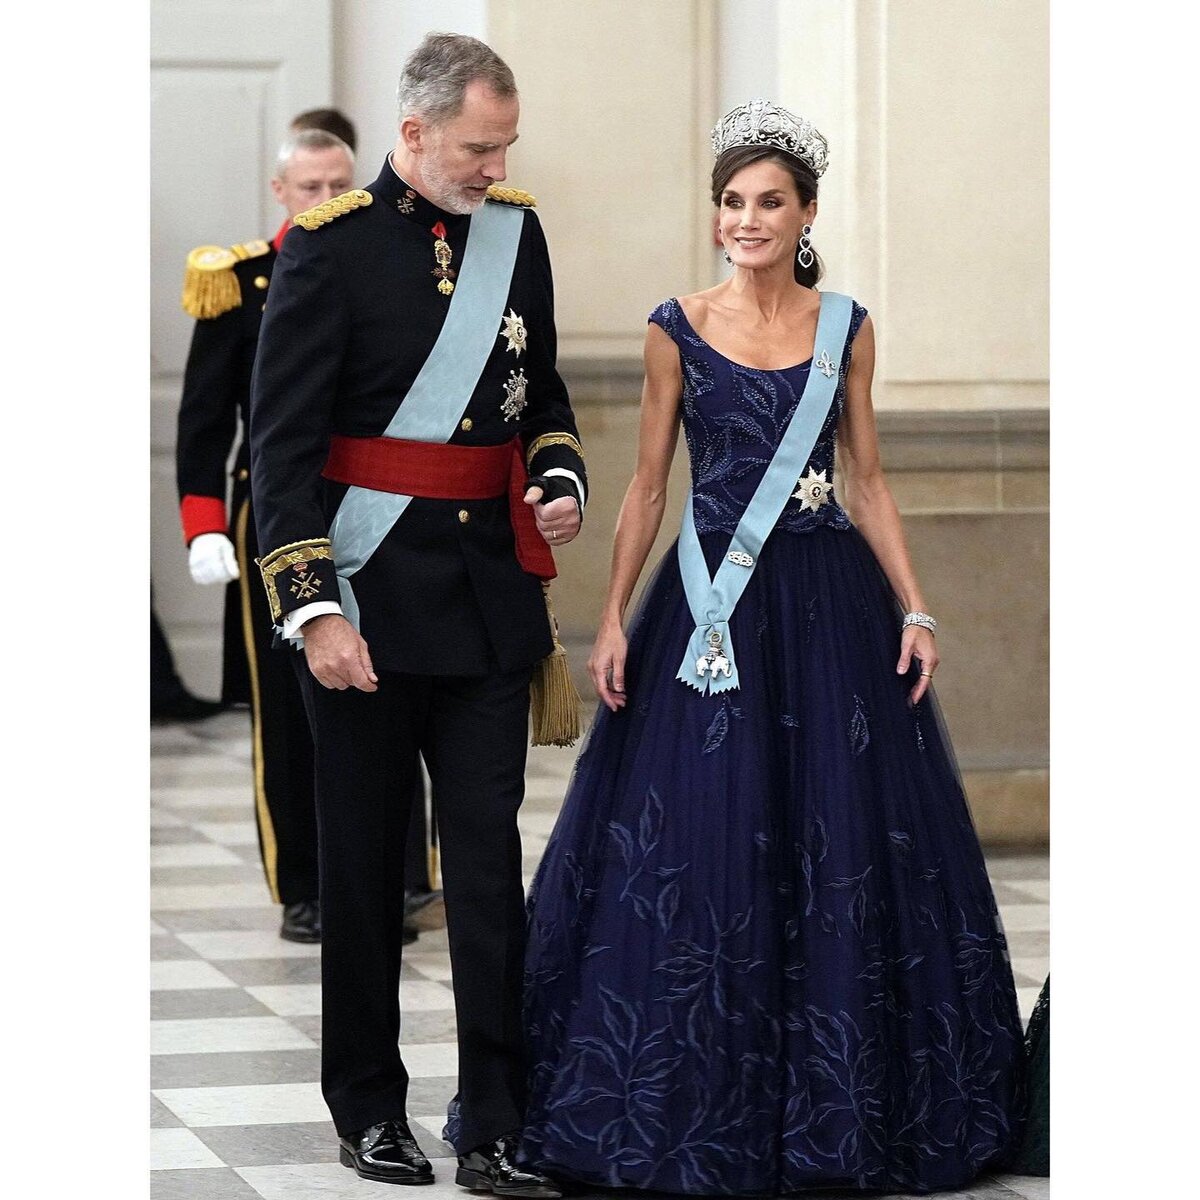 Испанский король Филипп и королева Летиция побывали на званом ужине у датской королевской семьи во дворце Кристианборг.-7